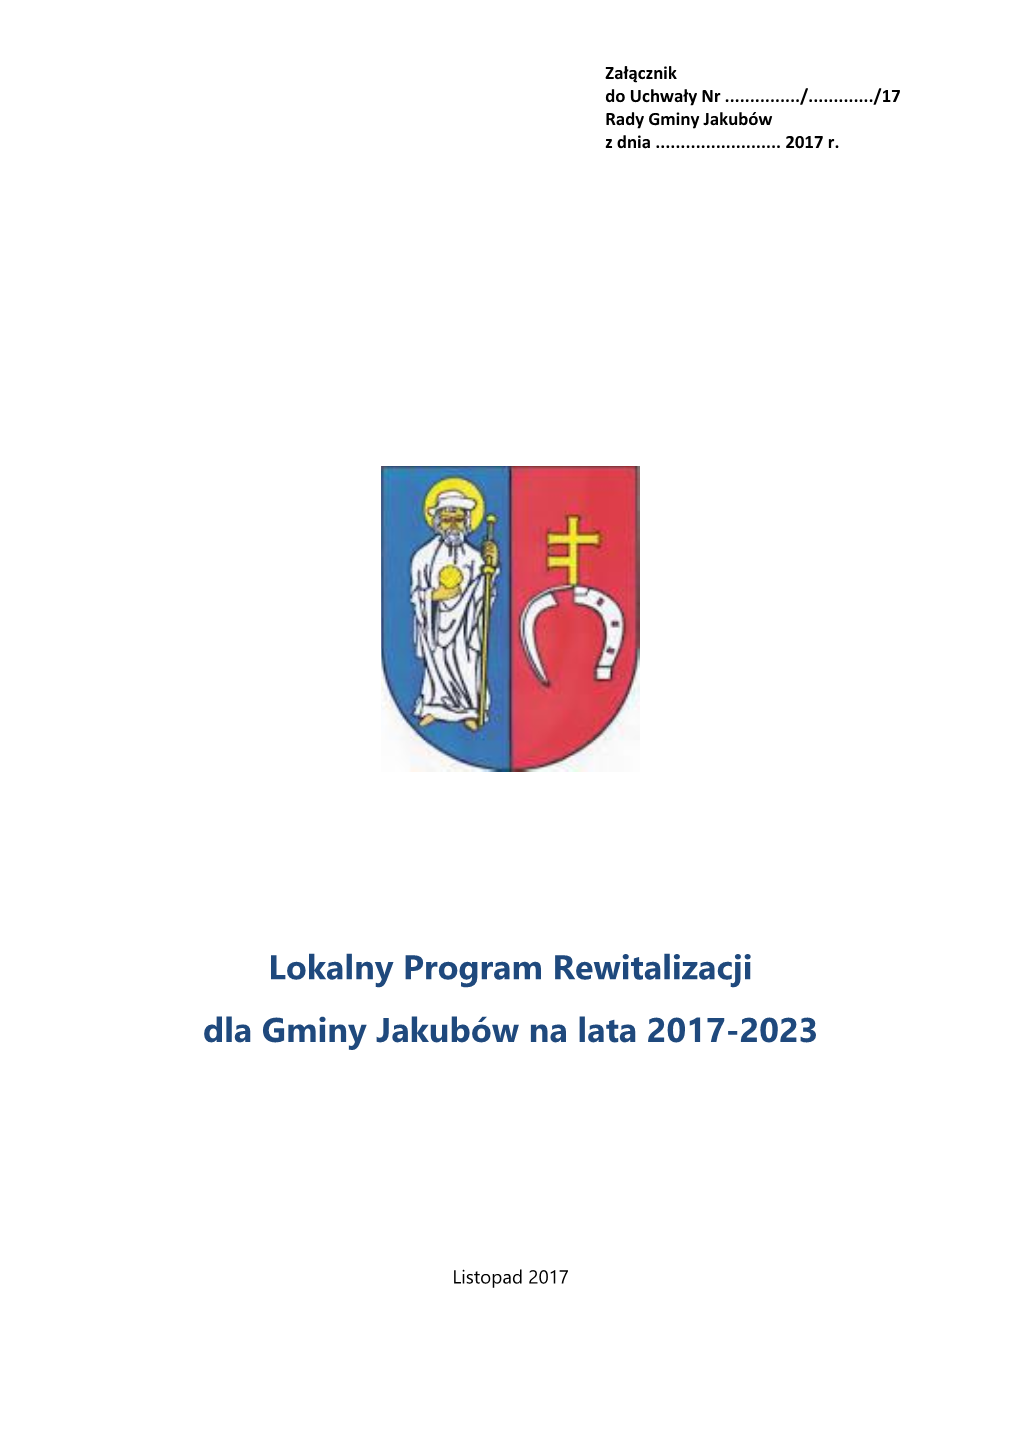 Lokalny Program Rewitalizacji Dla Gminy Jakubów Na Lata 2017-2023